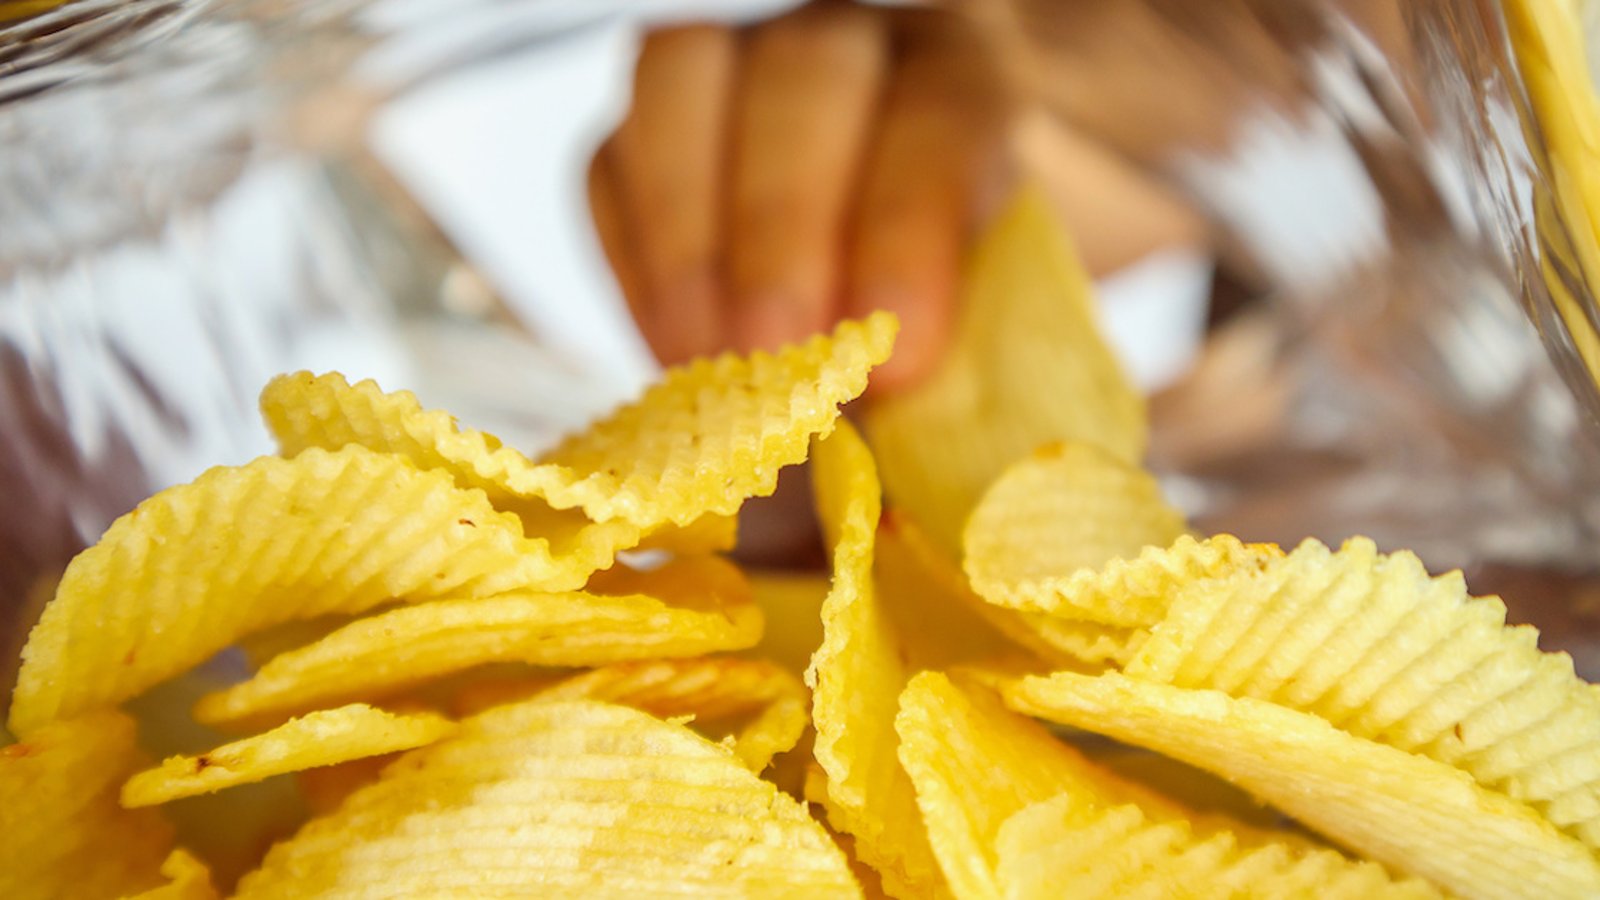 Voici pourquoi il est si difficile d’arrêter de manger des chips, selon la science..